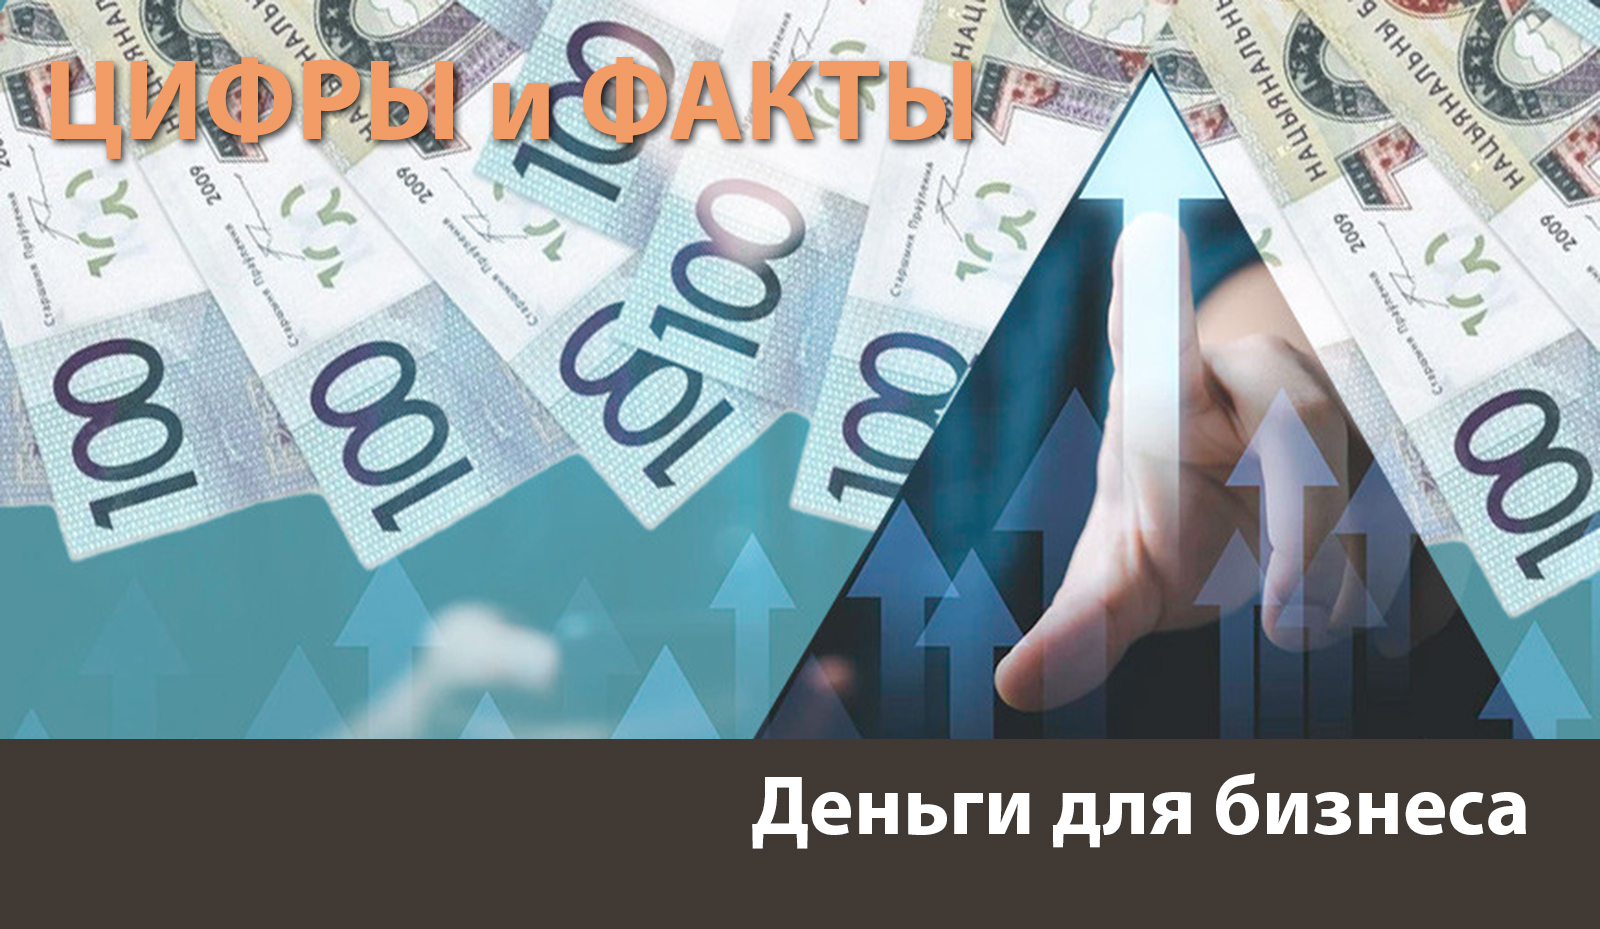 Цифры и факты: кредитный портфель МСП достиг 25 миллиардов рублей